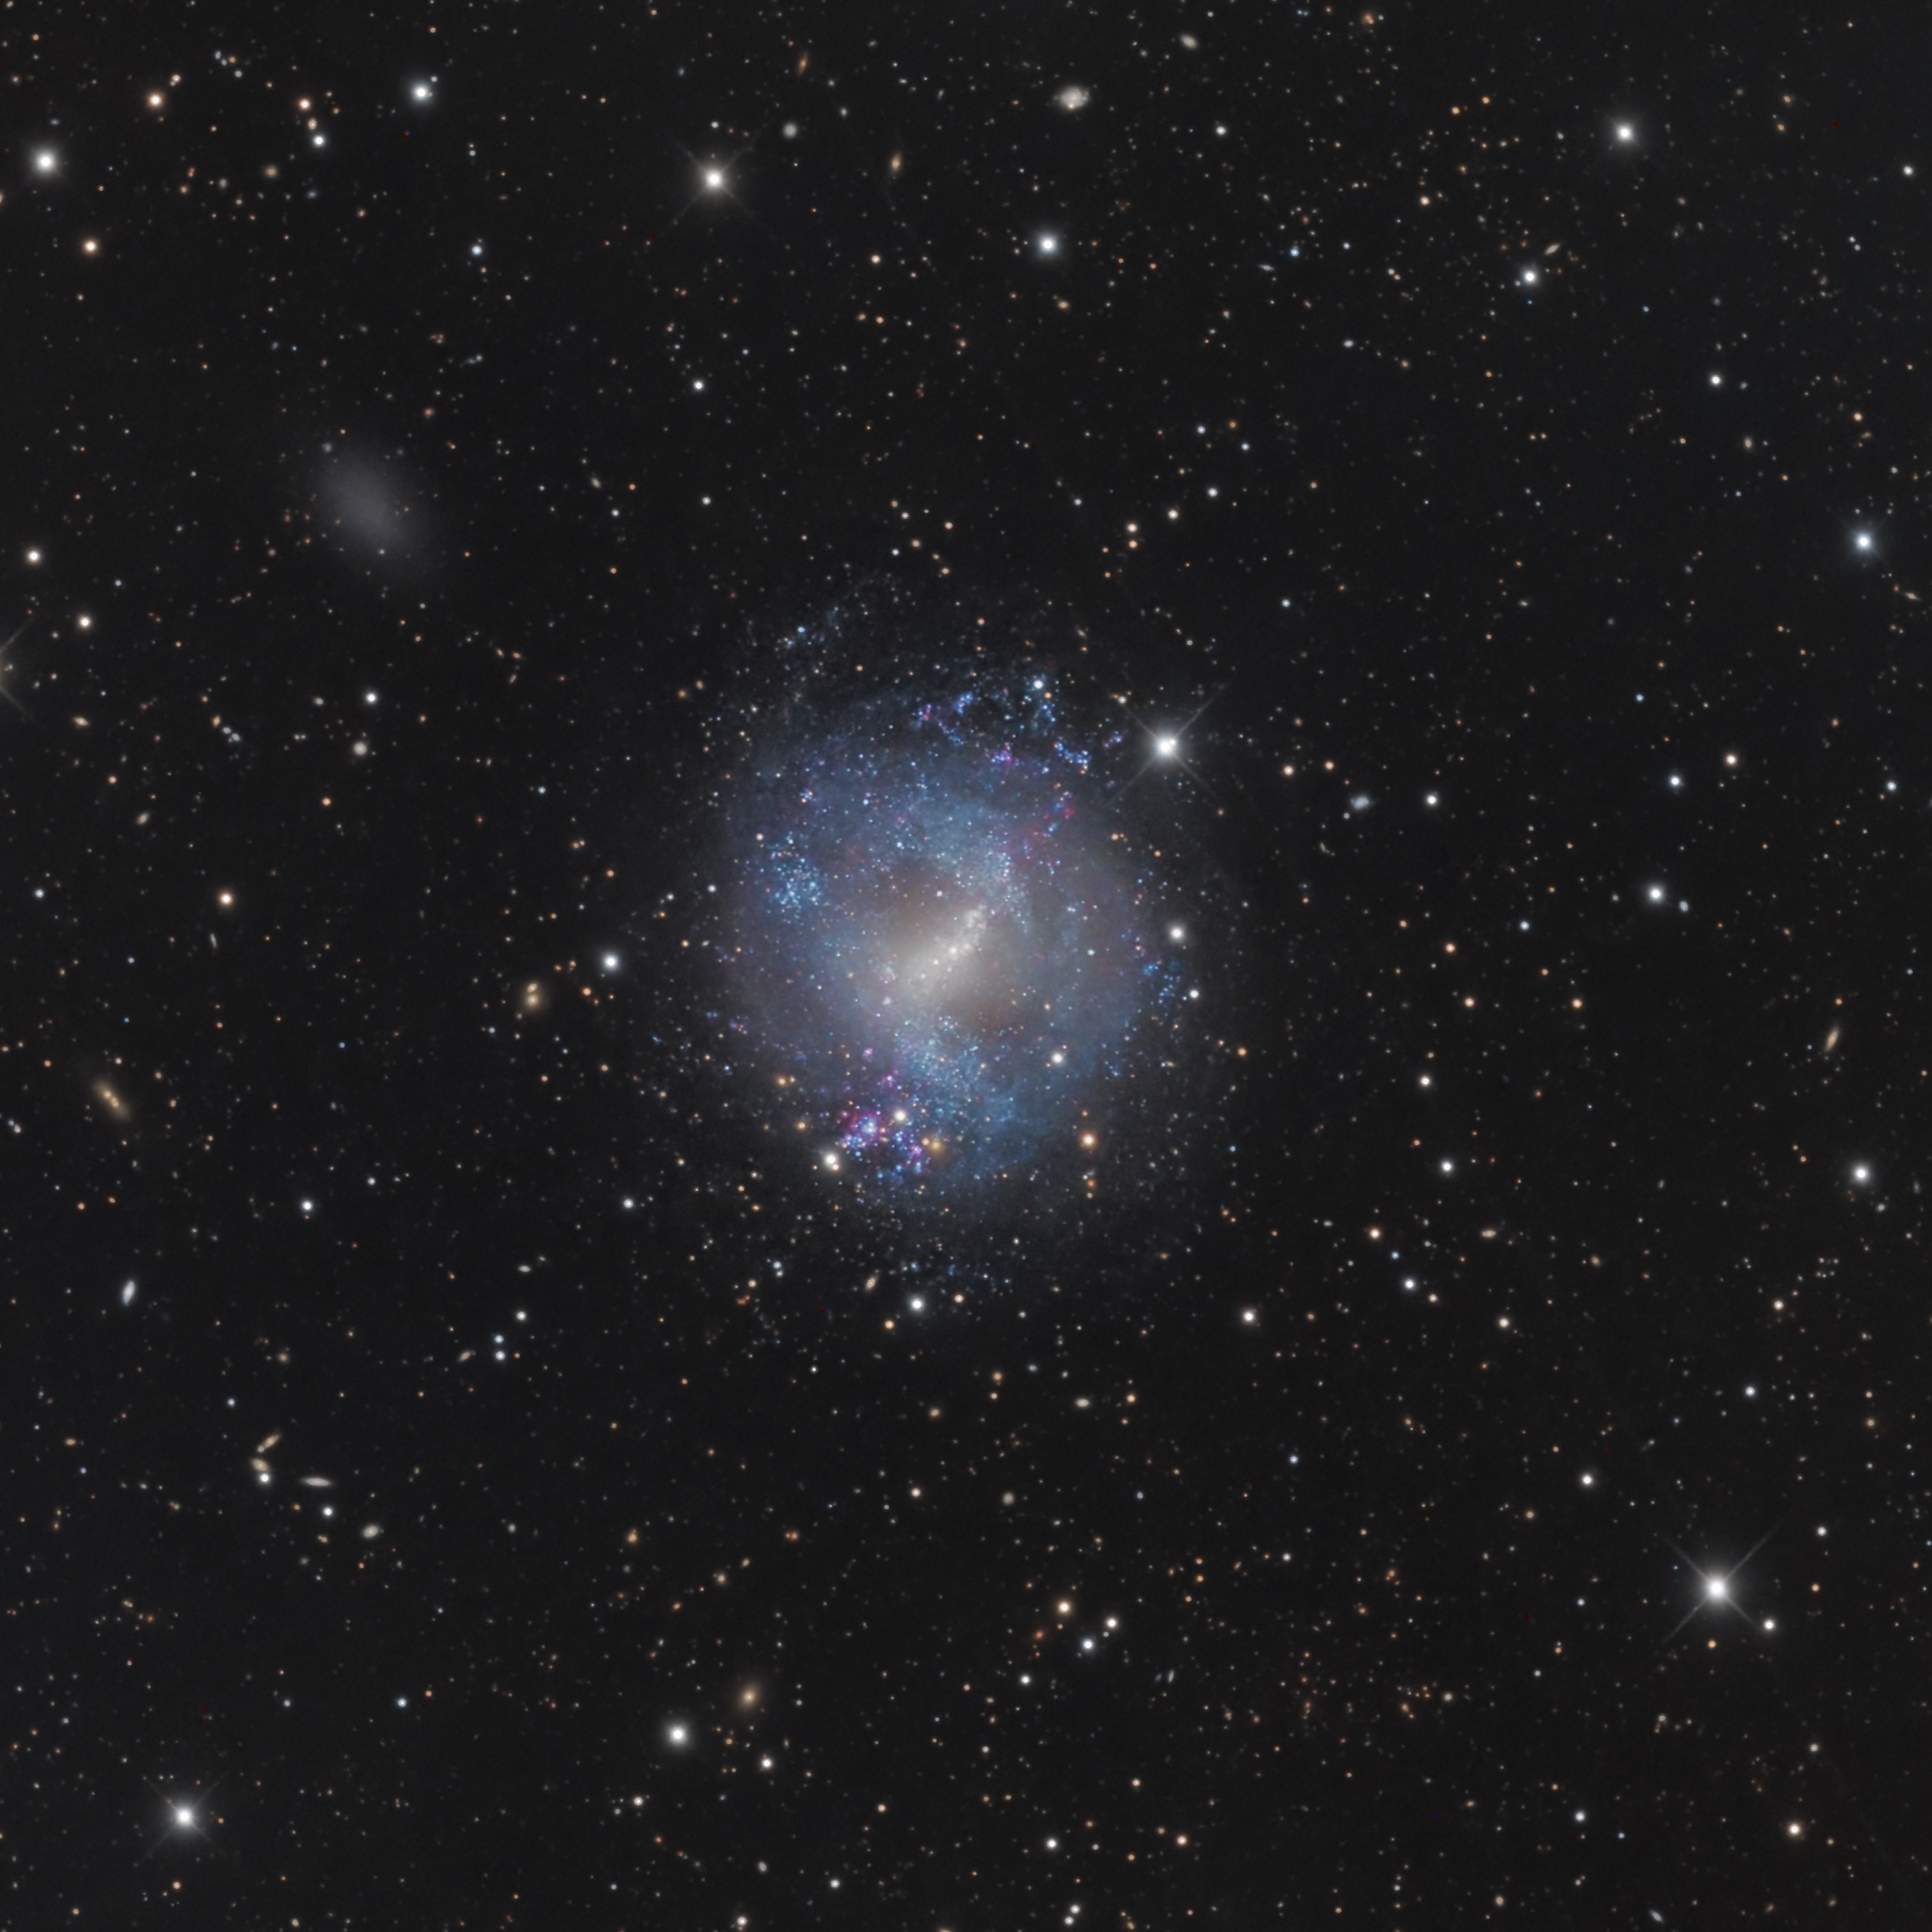 NGC 4214 